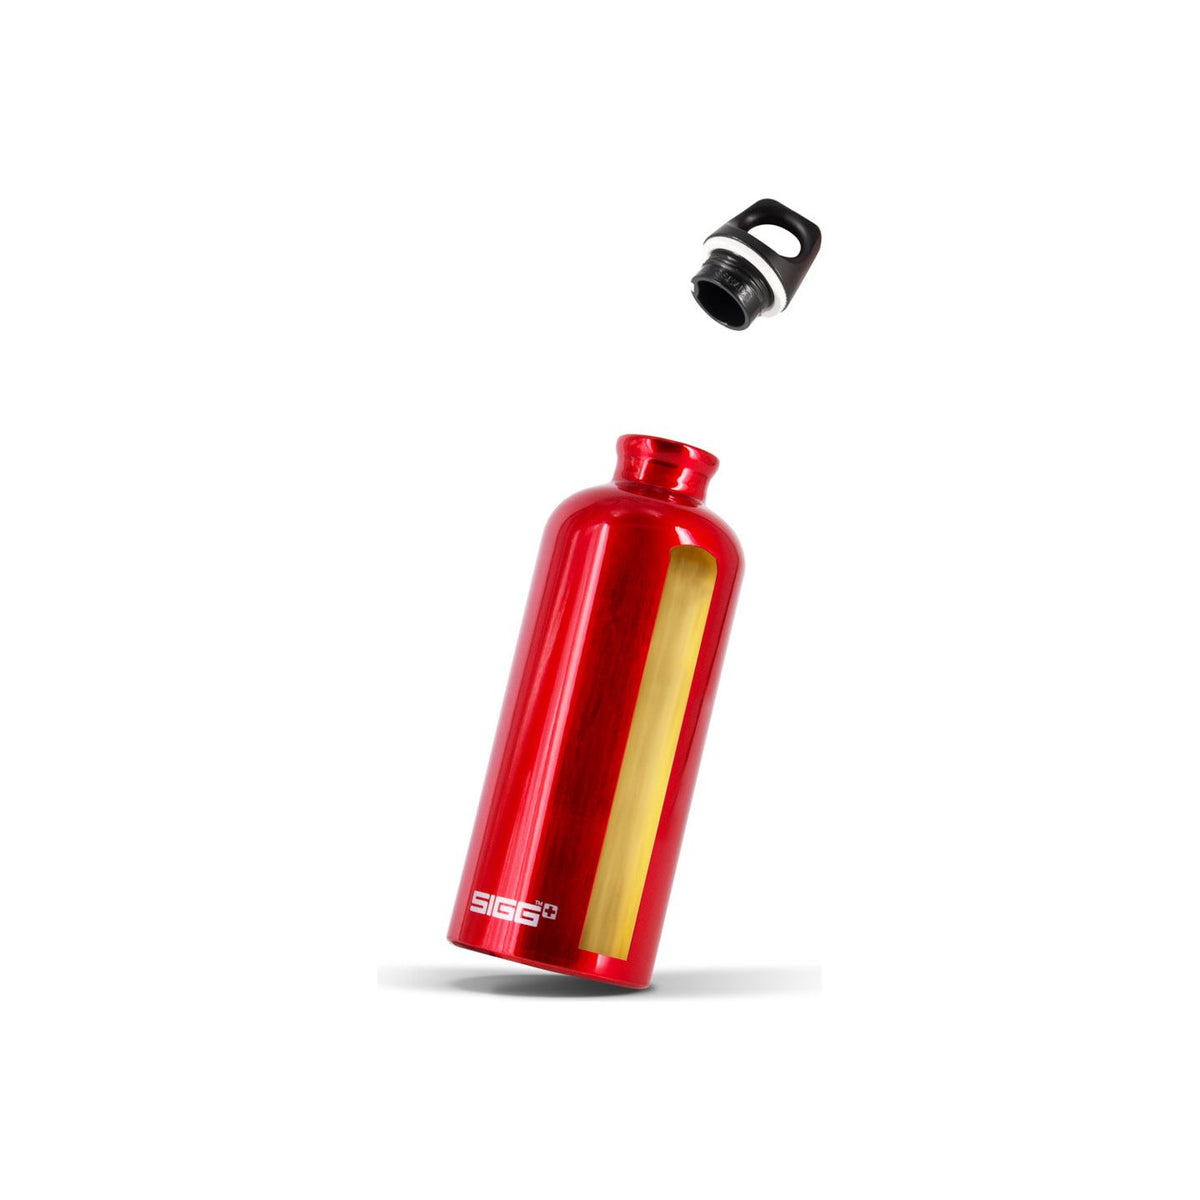 Sigg Traveller 0.6L Water Bottle - Red